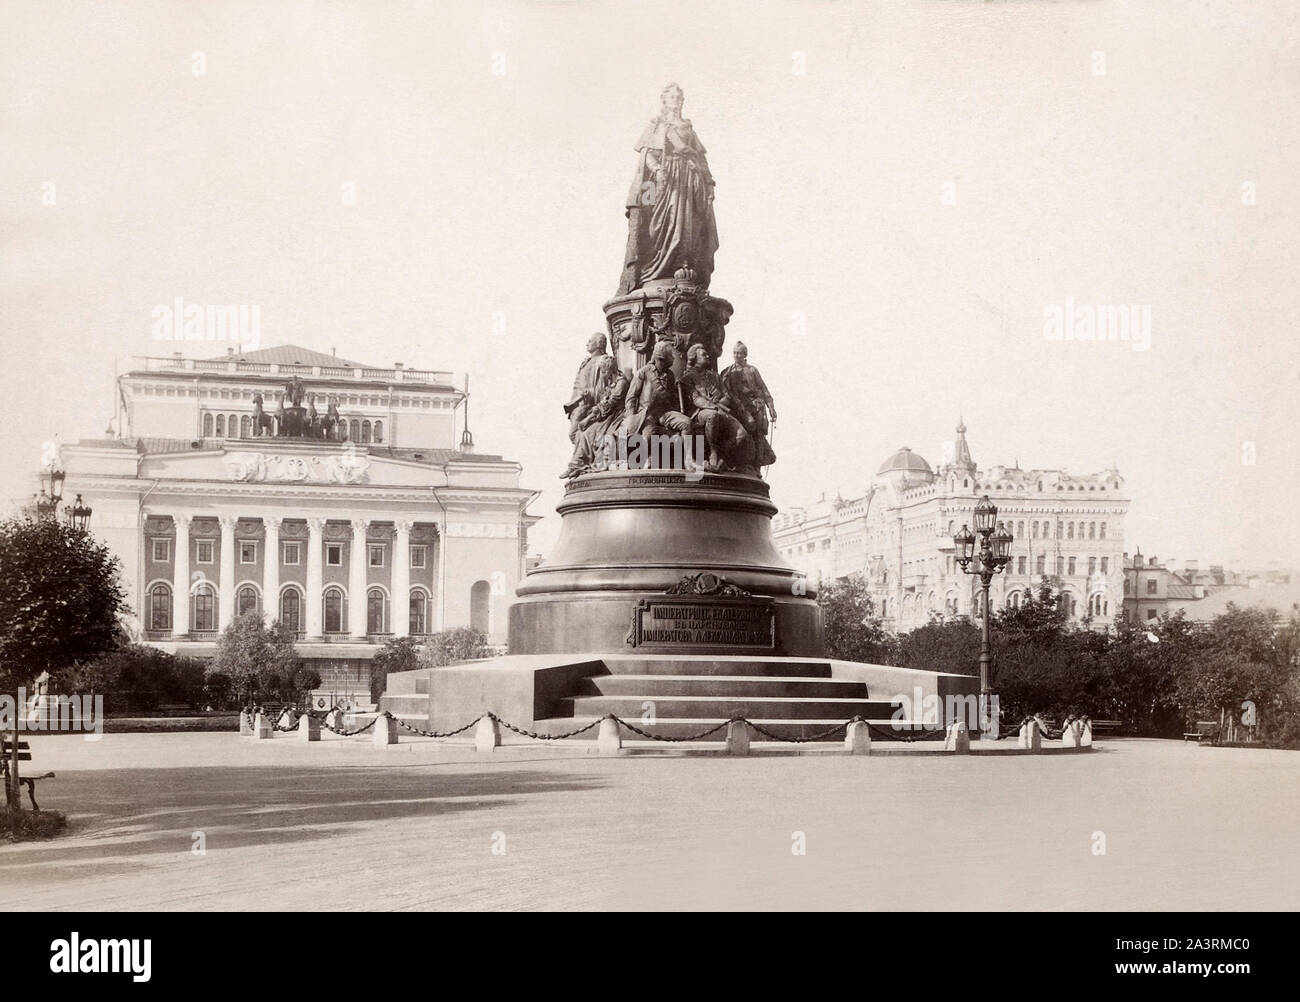 Monument à l'impératrice russe Catherine II à Saint-Pétersbourg. Années 1862-1873 Banque D'Images